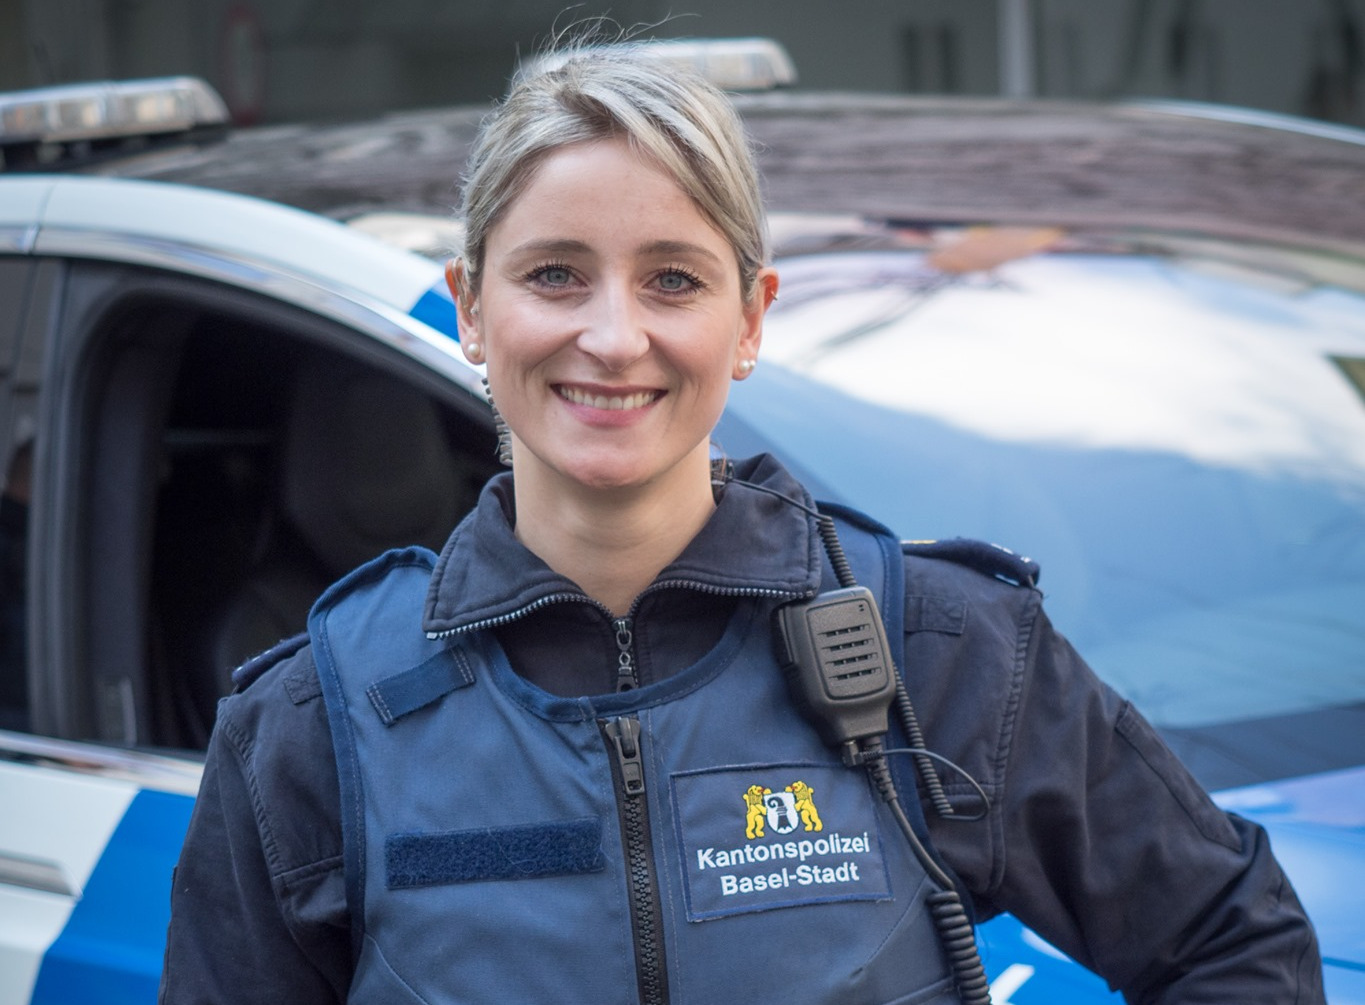 Kapo Basel-Stadt: „Darum bin ich gerne Polizistin 